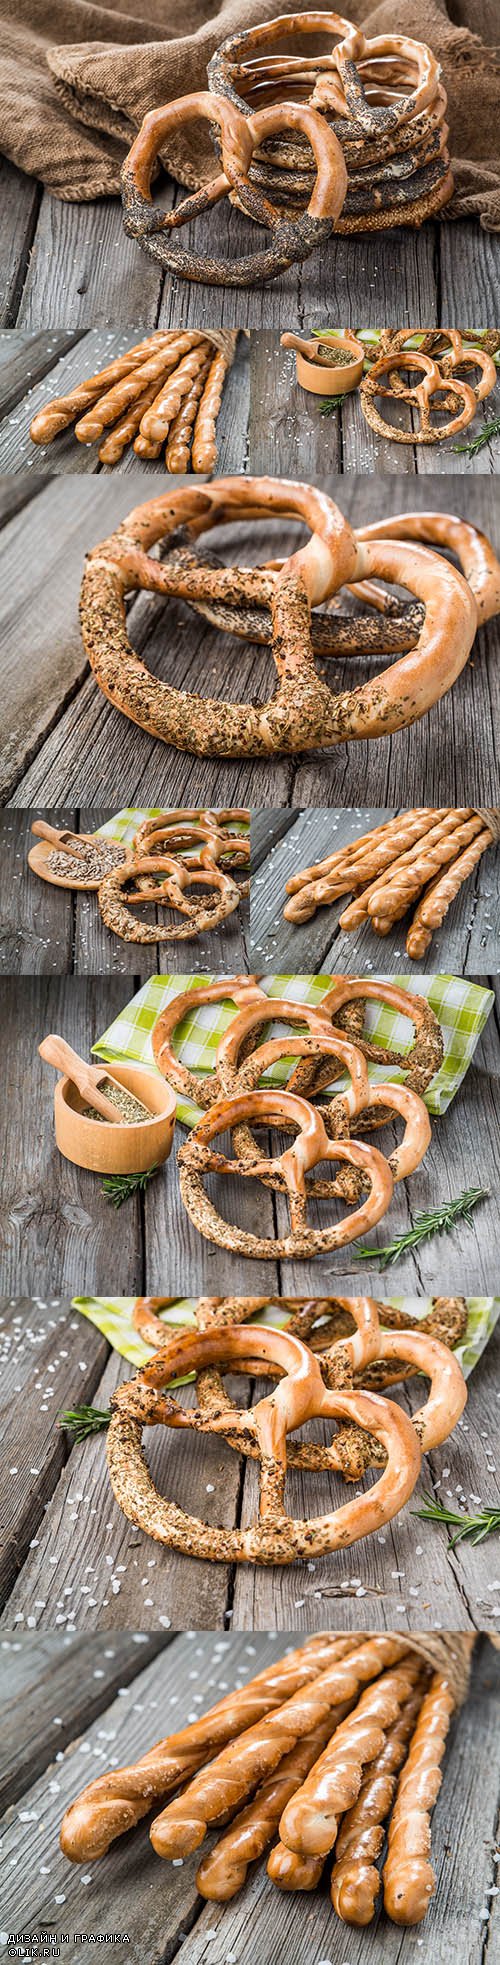 German pretzel and cheese sticks village background